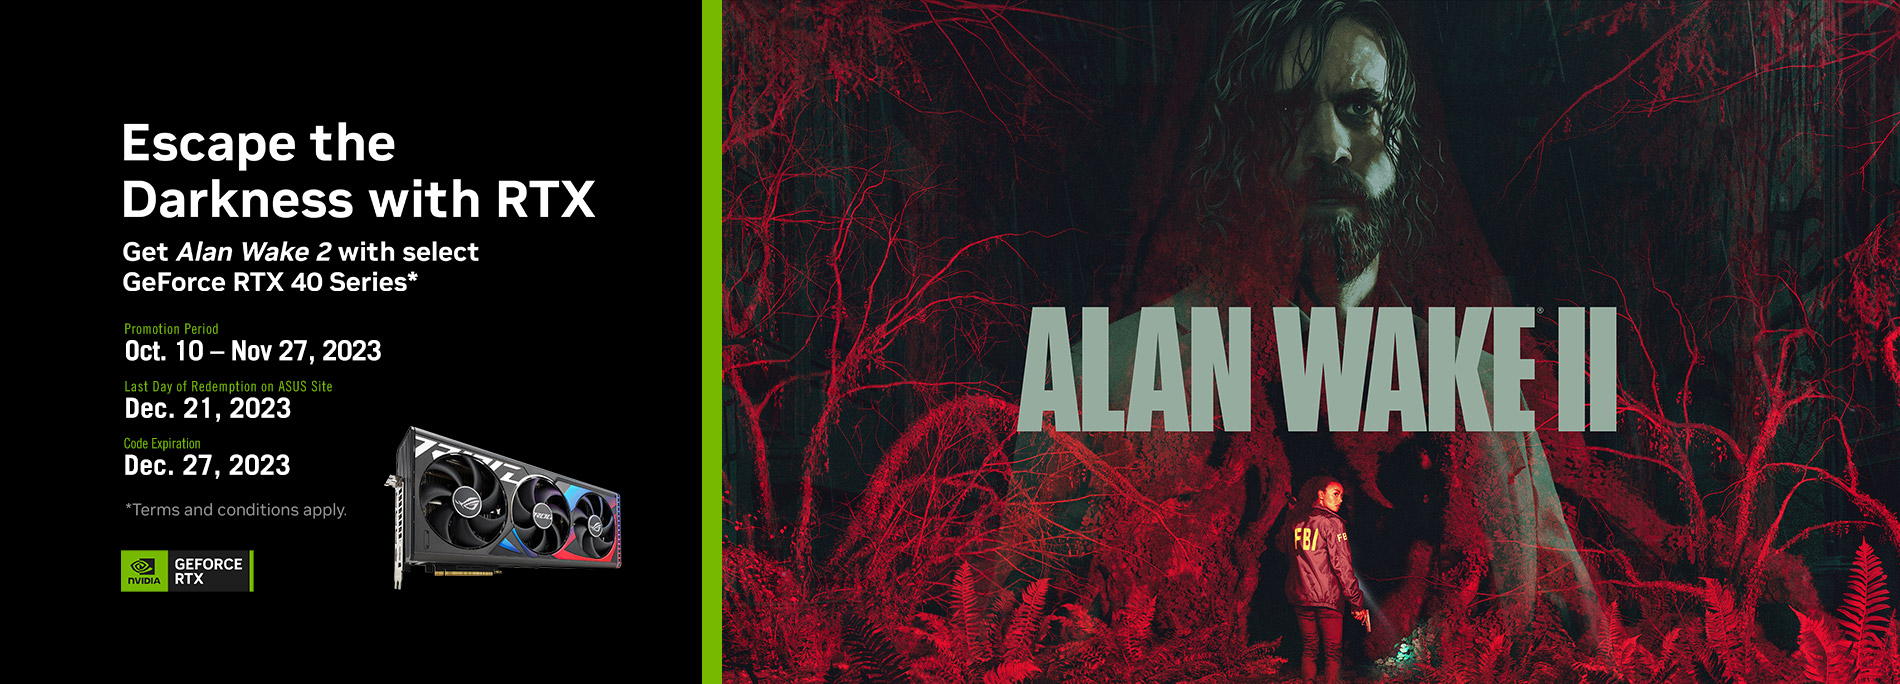 Buy Select ASUS GeForce RTX 40 Series*, get Alan Wake 2